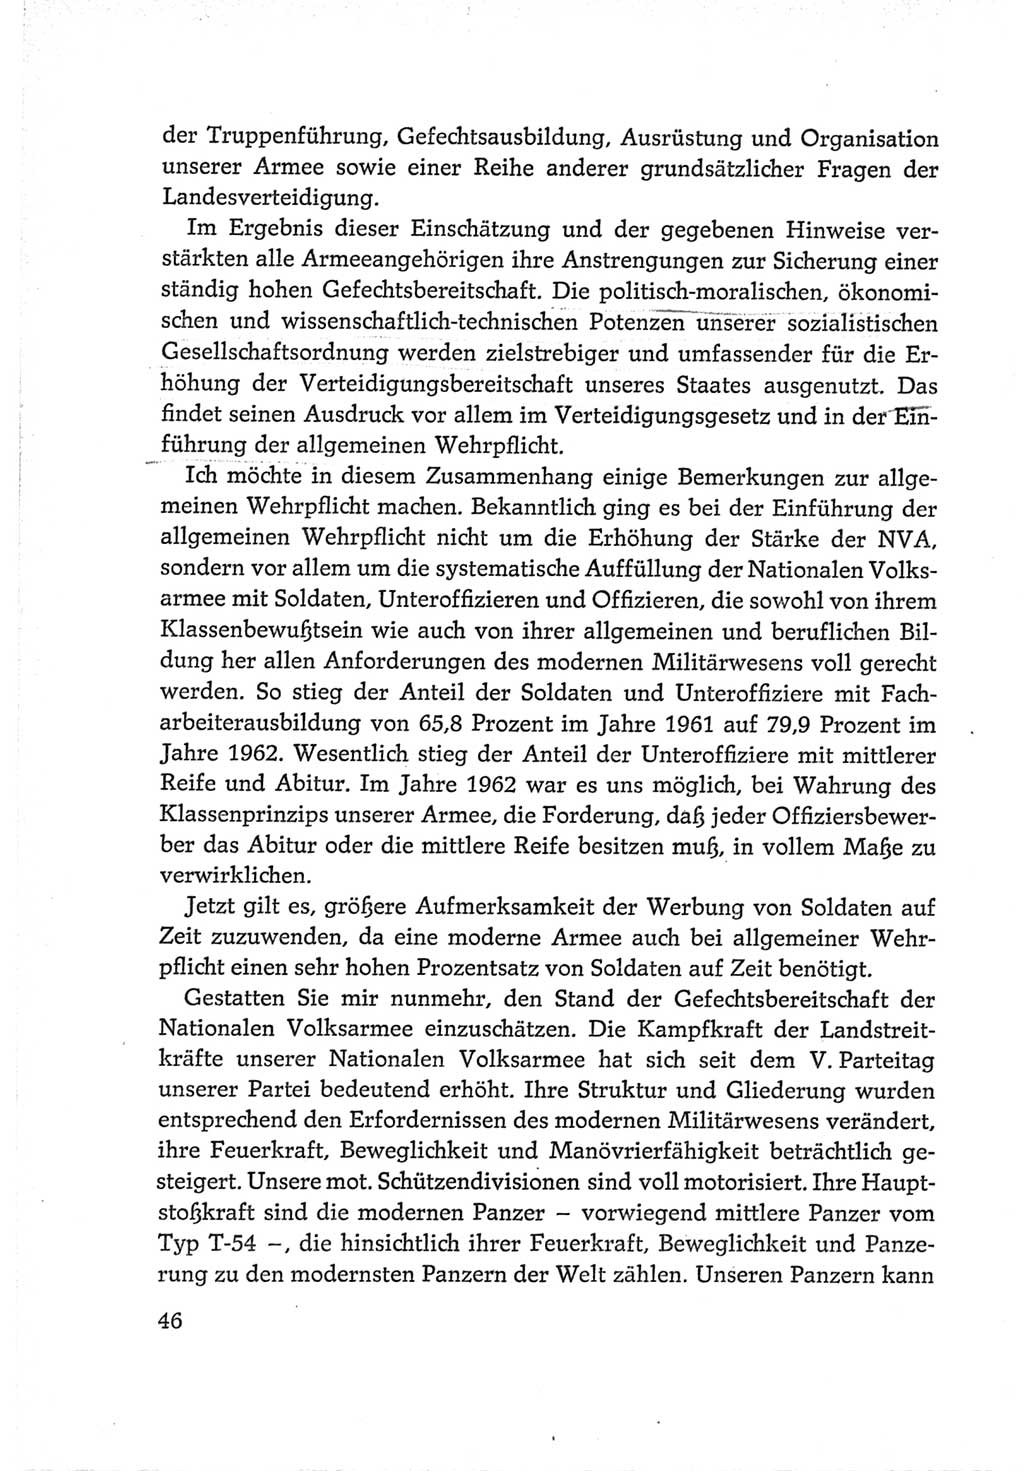 Protokoll der Verhandlungen des Ⅵ. Parteitages der Sozialistischen Einheitspartei Deutschlands (SED) [Deutsche Demokratische Republik (DDR)] 1963, Band Ⅱ, Seite 46 (Prot. Verh. Ⅵ. PT SED DDR 1963, Bd. Ⅱ, S. 46)